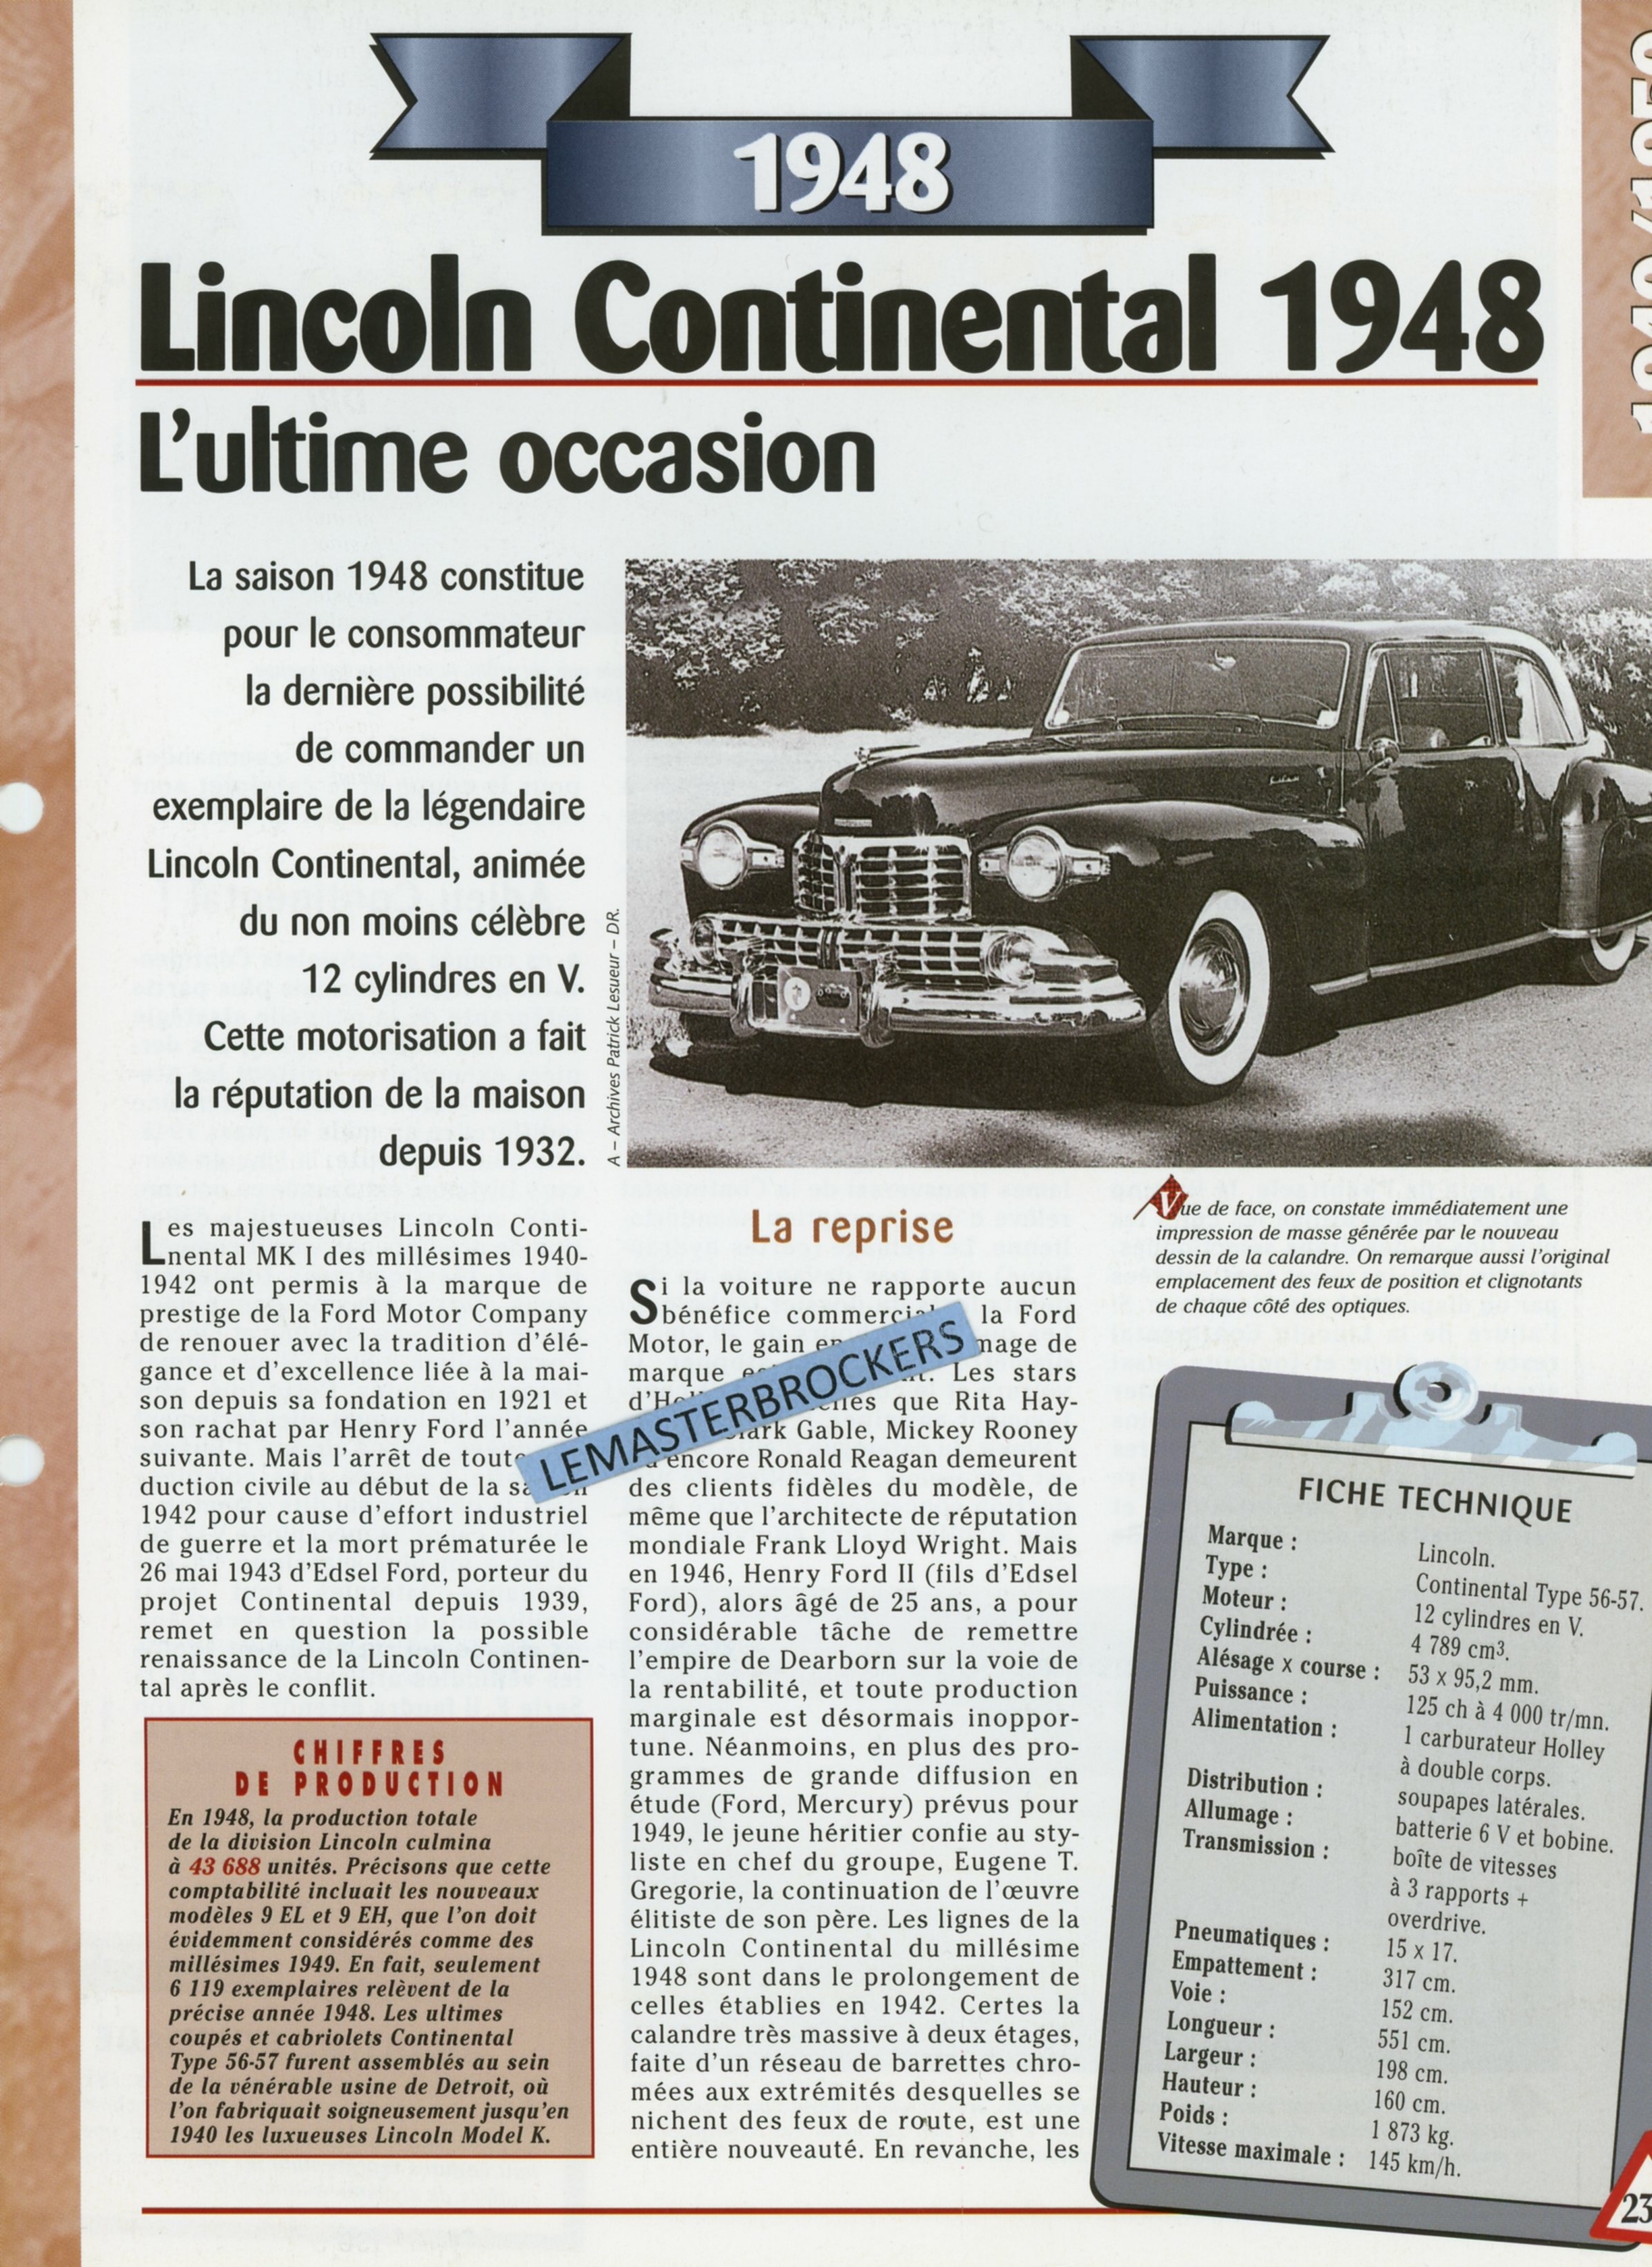 LINCOLN CONTINENTAL 1948 FICHE TECHNIQUE - FICHE AUTO - HACHETTE LITTÉRATURE AUTOMOBILE